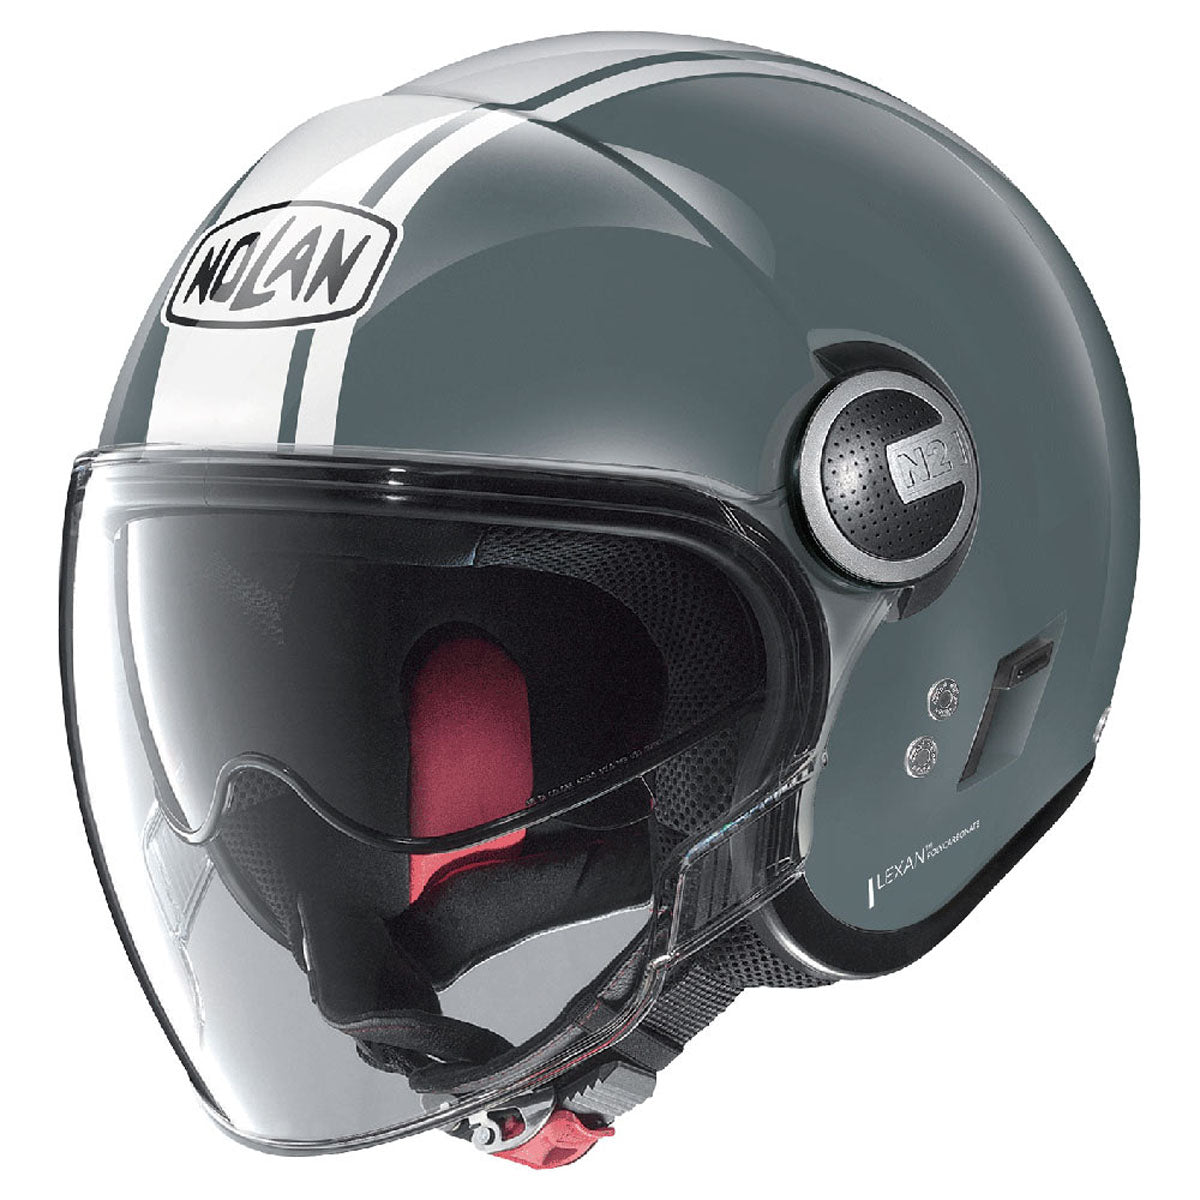 Nolan N21 Helmet